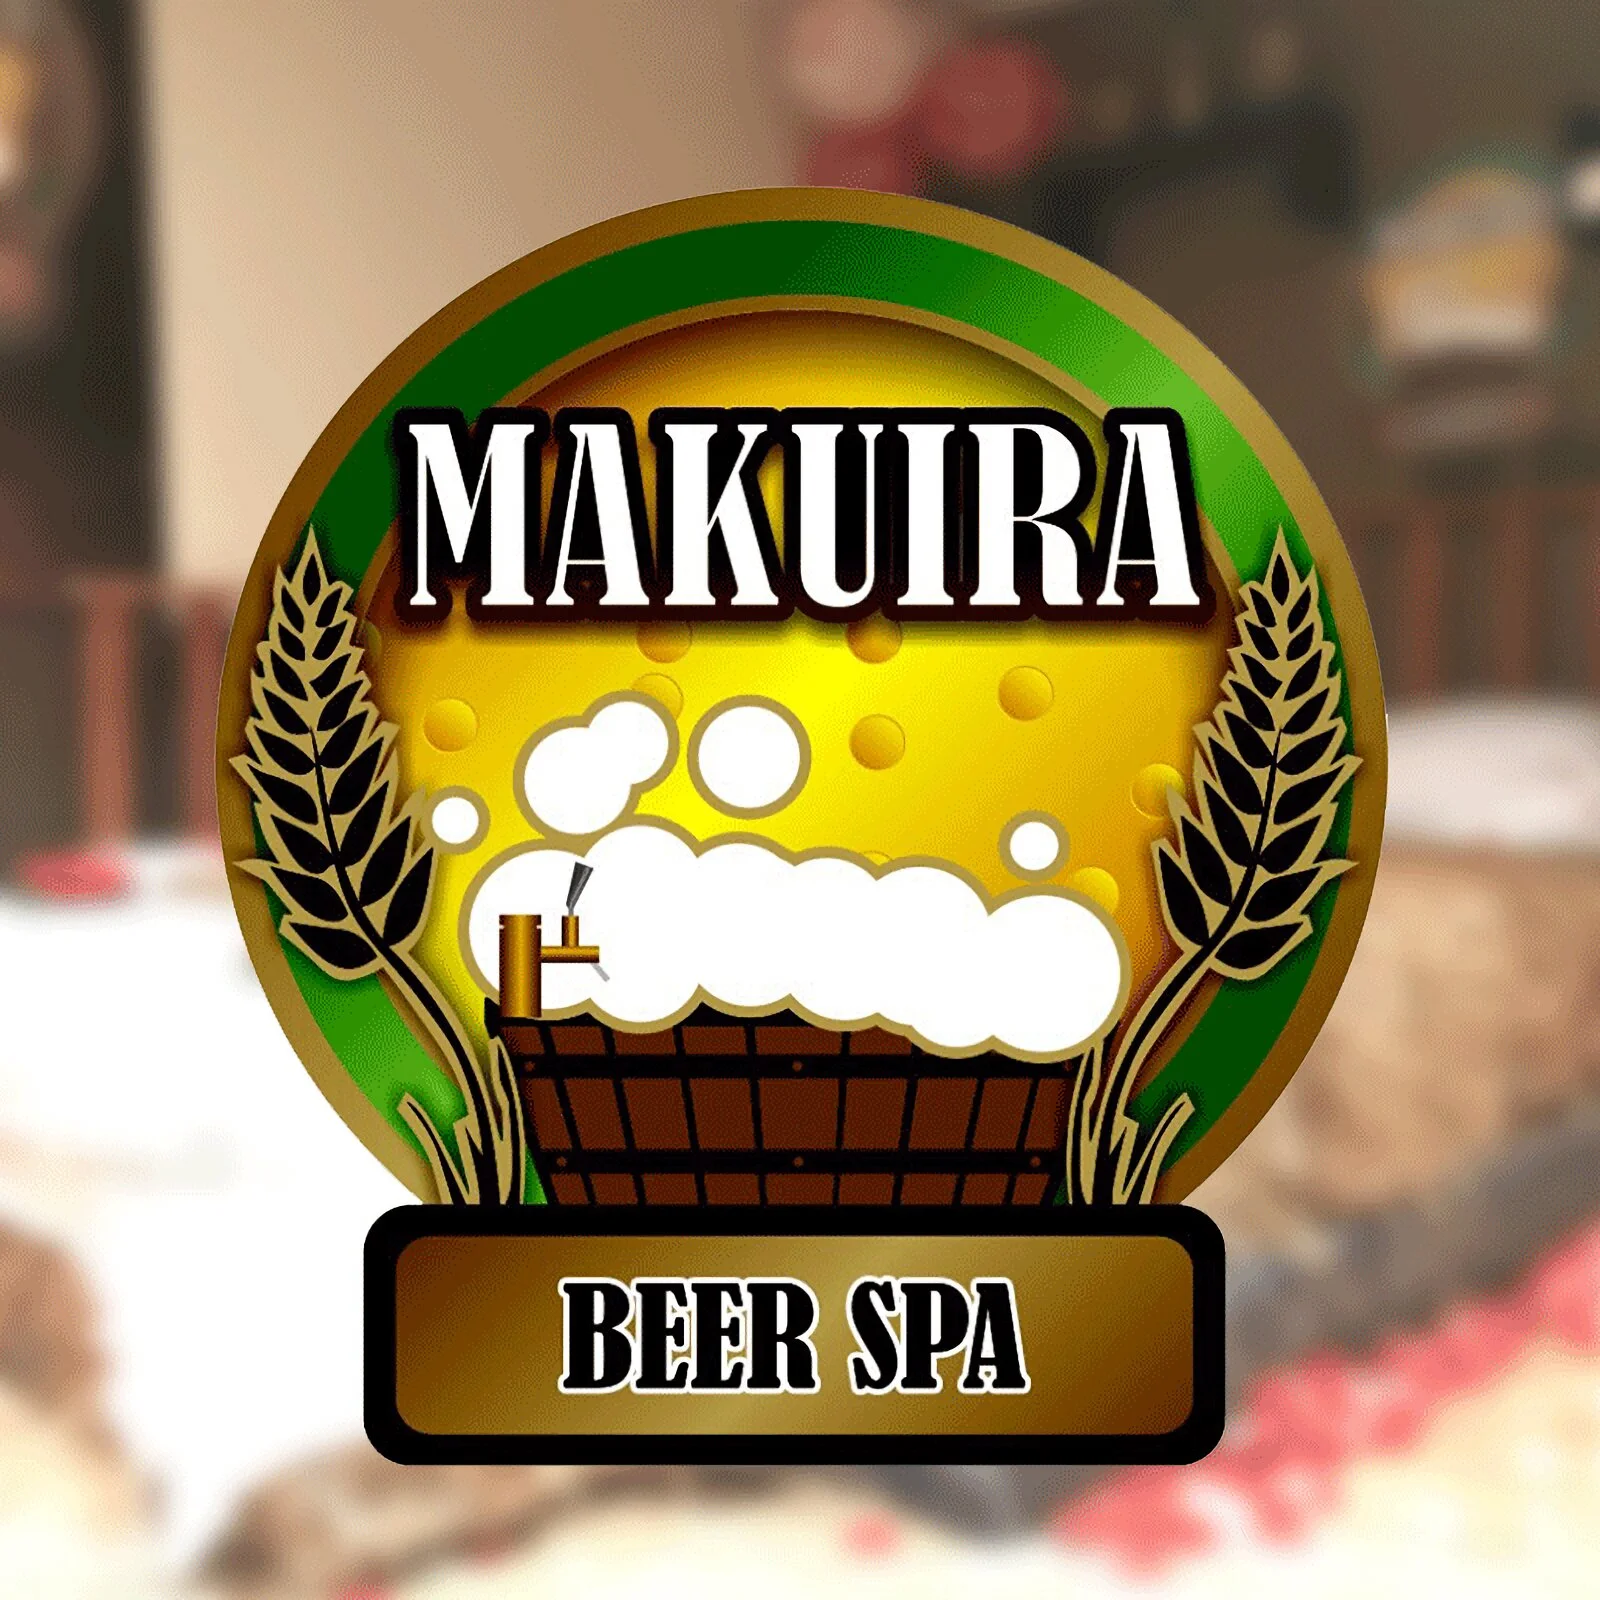 Spa-makuira-beer-spa-5539